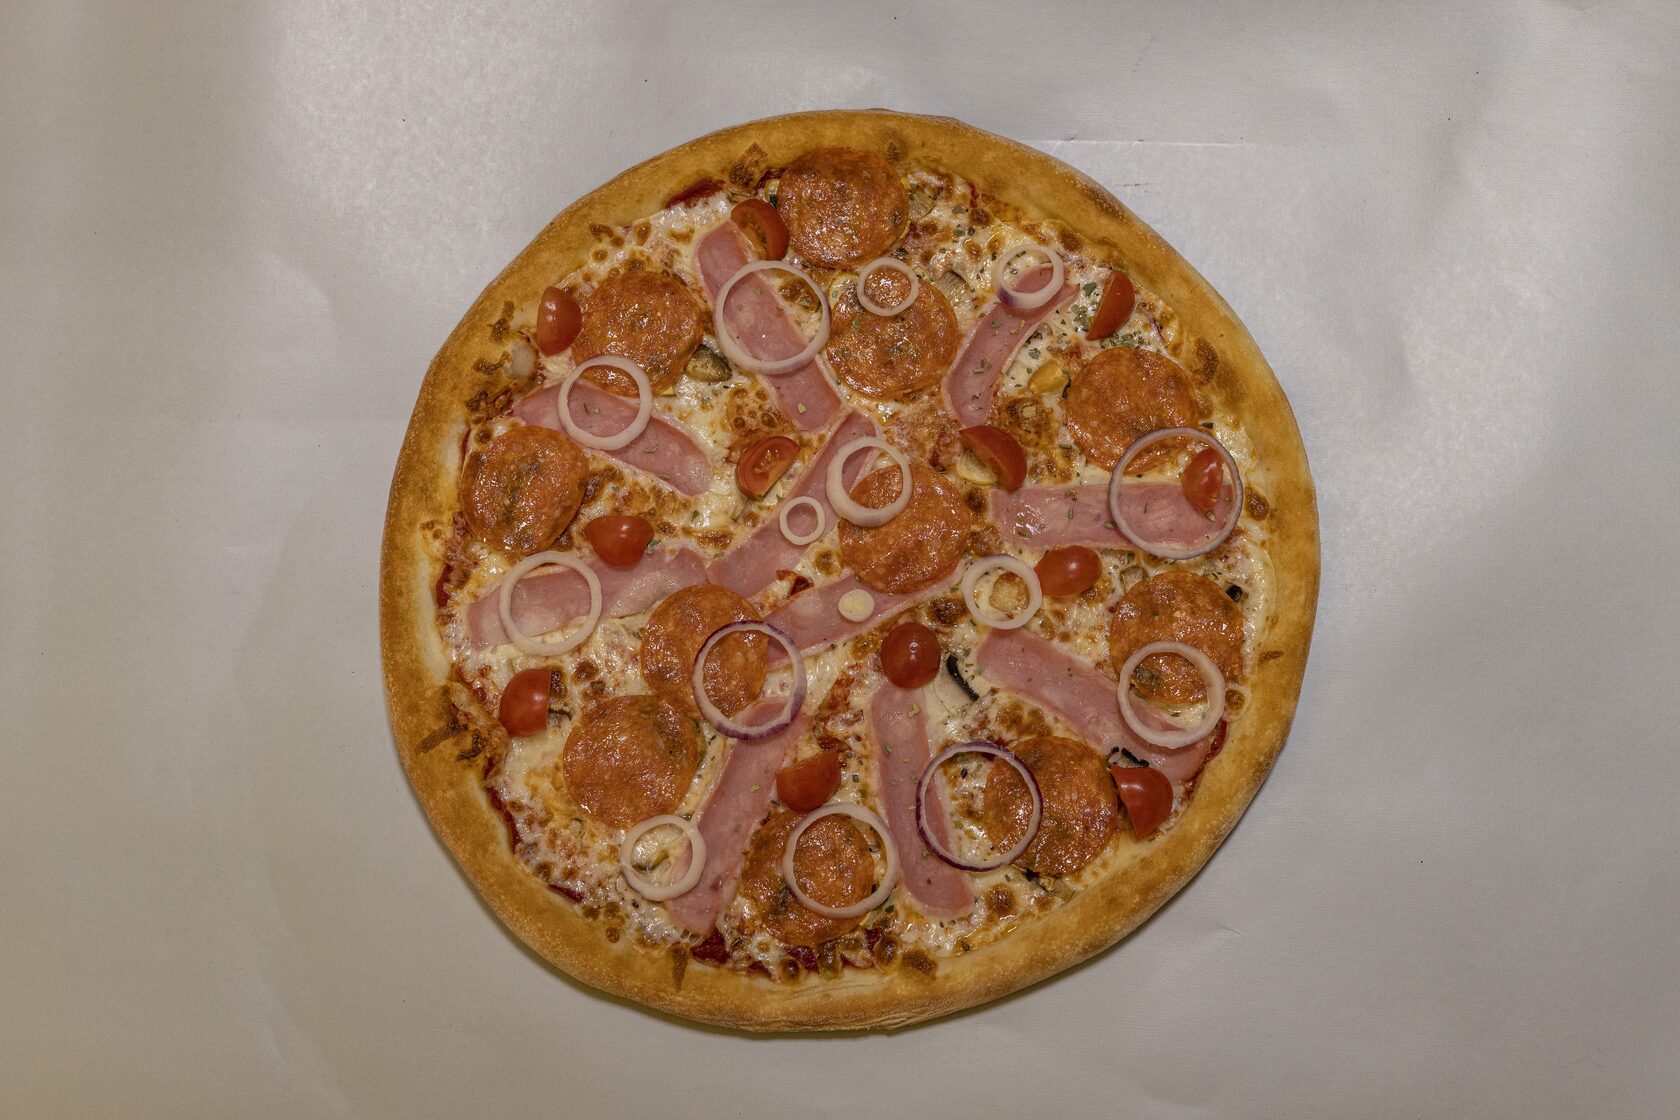 я хочу пиццу песто с пепперони и сосисками так же хочу другую с оливками фото 77